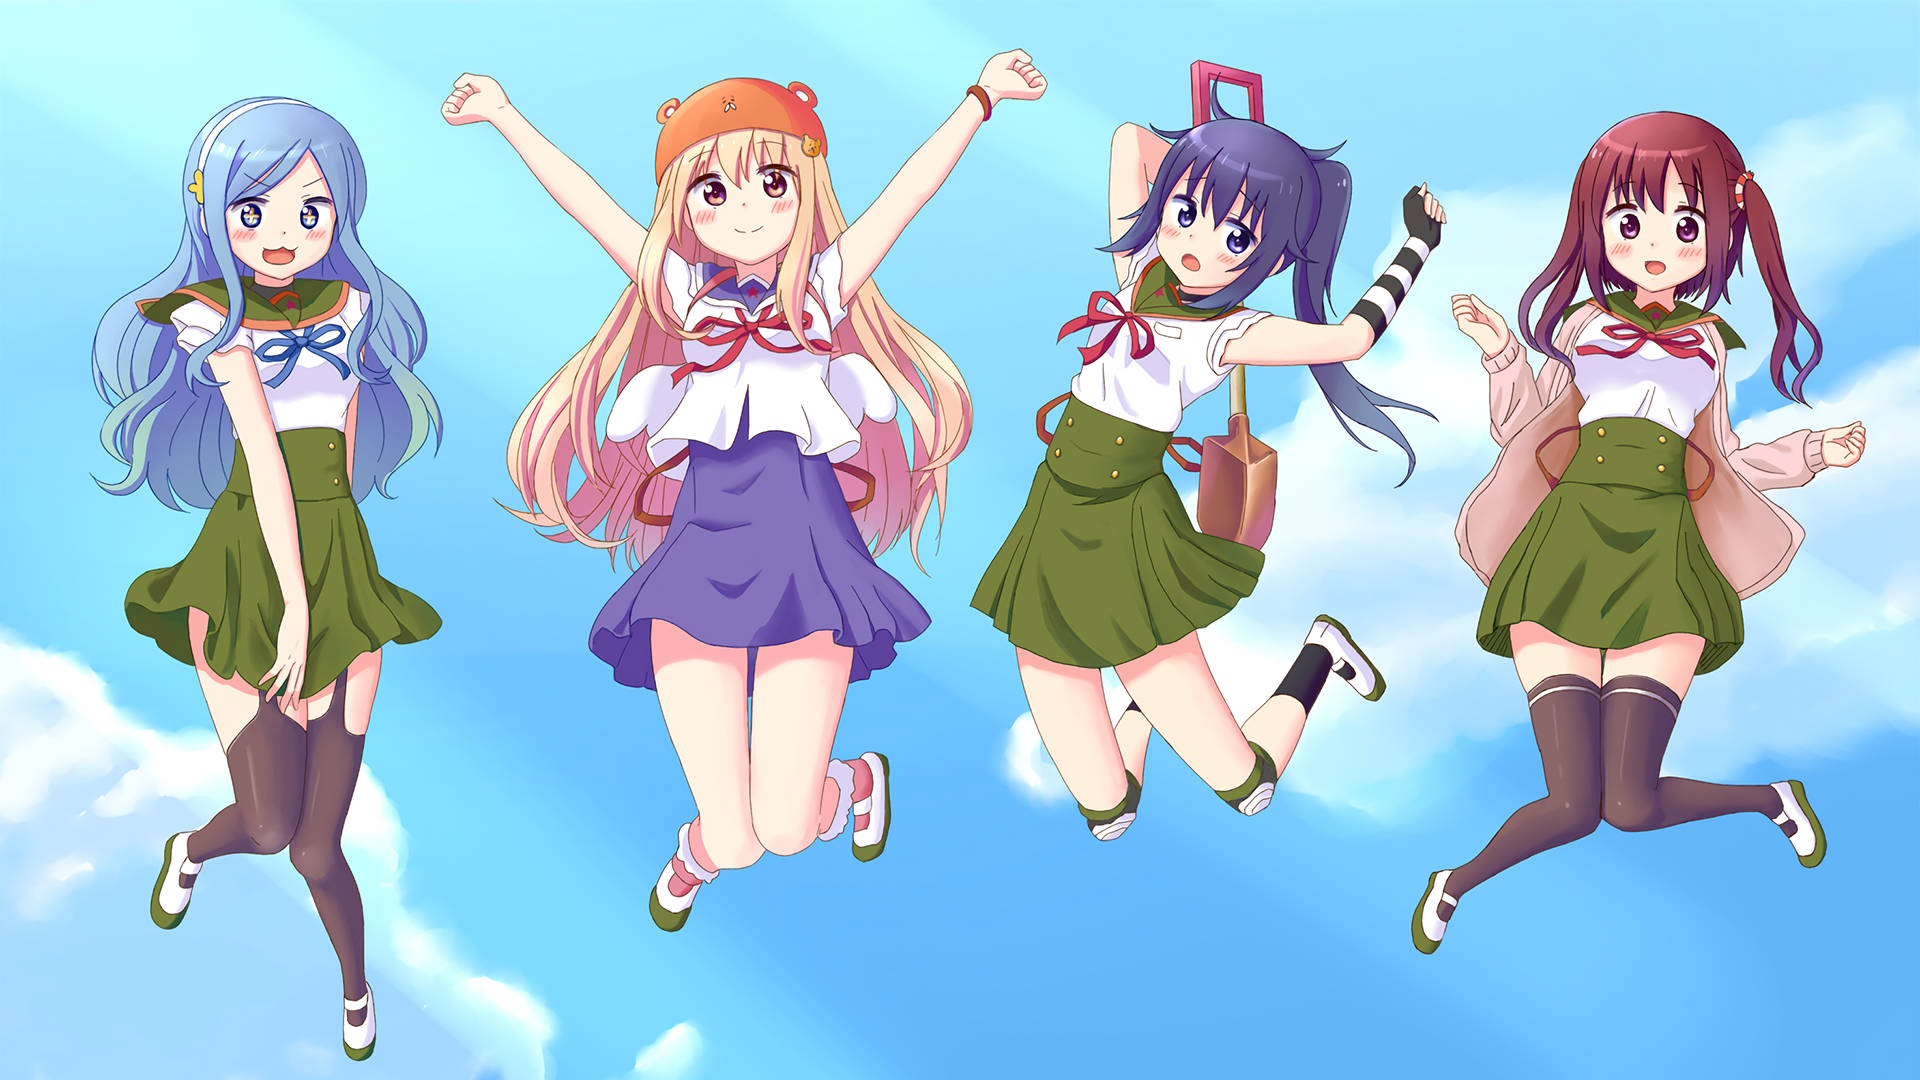 Anime Girls From Himouto! Umaru-chan